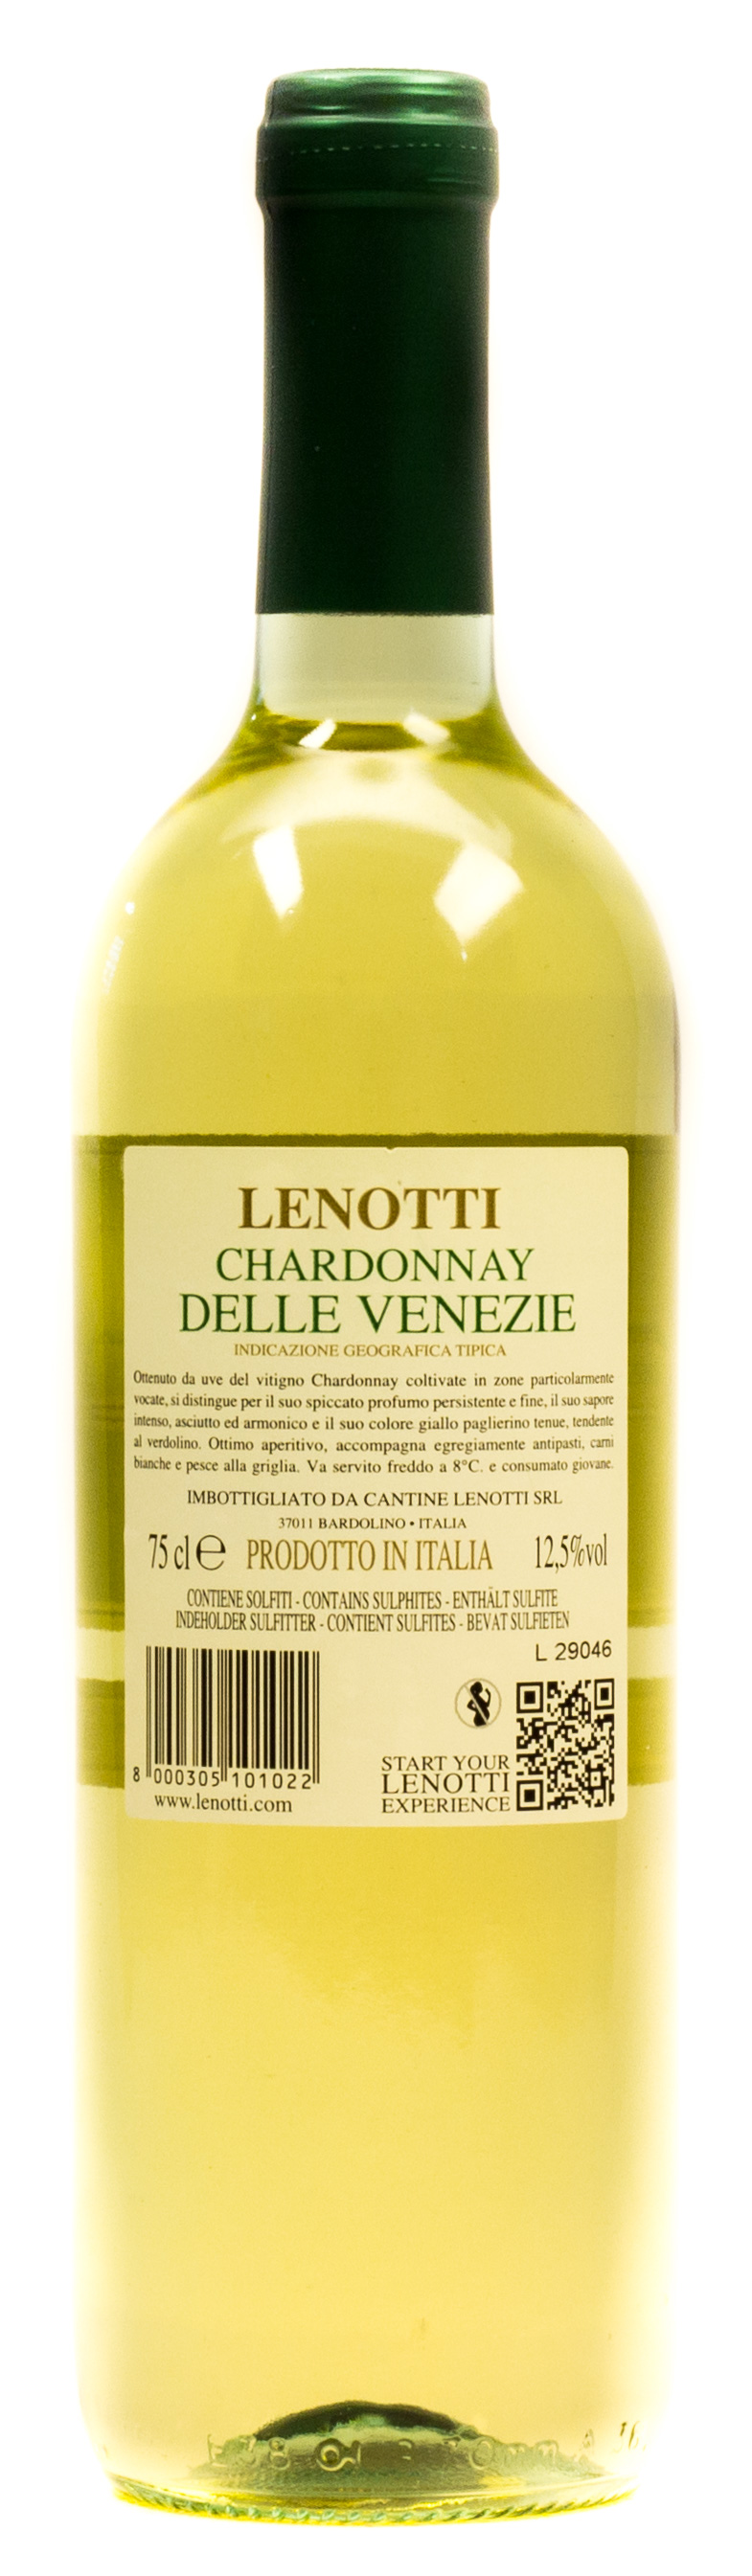 Lenotti Chardonnay Delle Venezie 0,75 l Glas